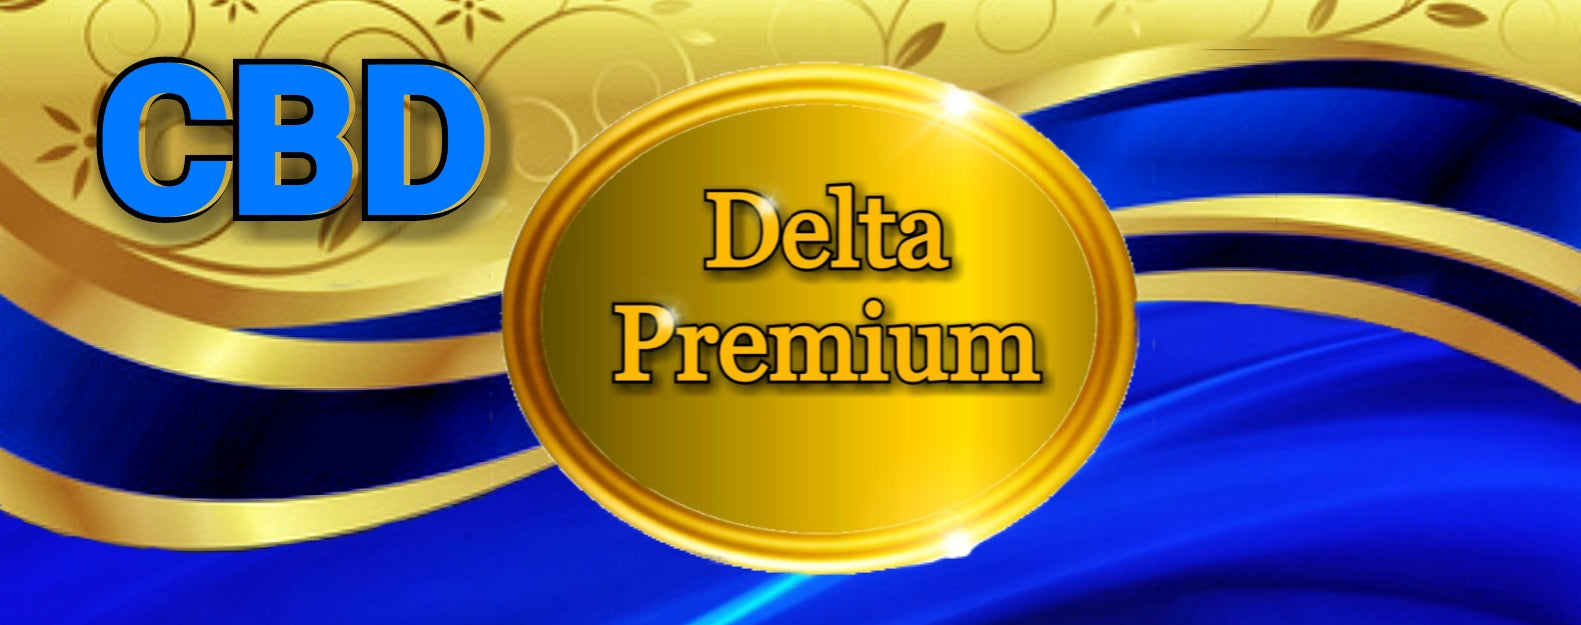 Delta Premium CBD